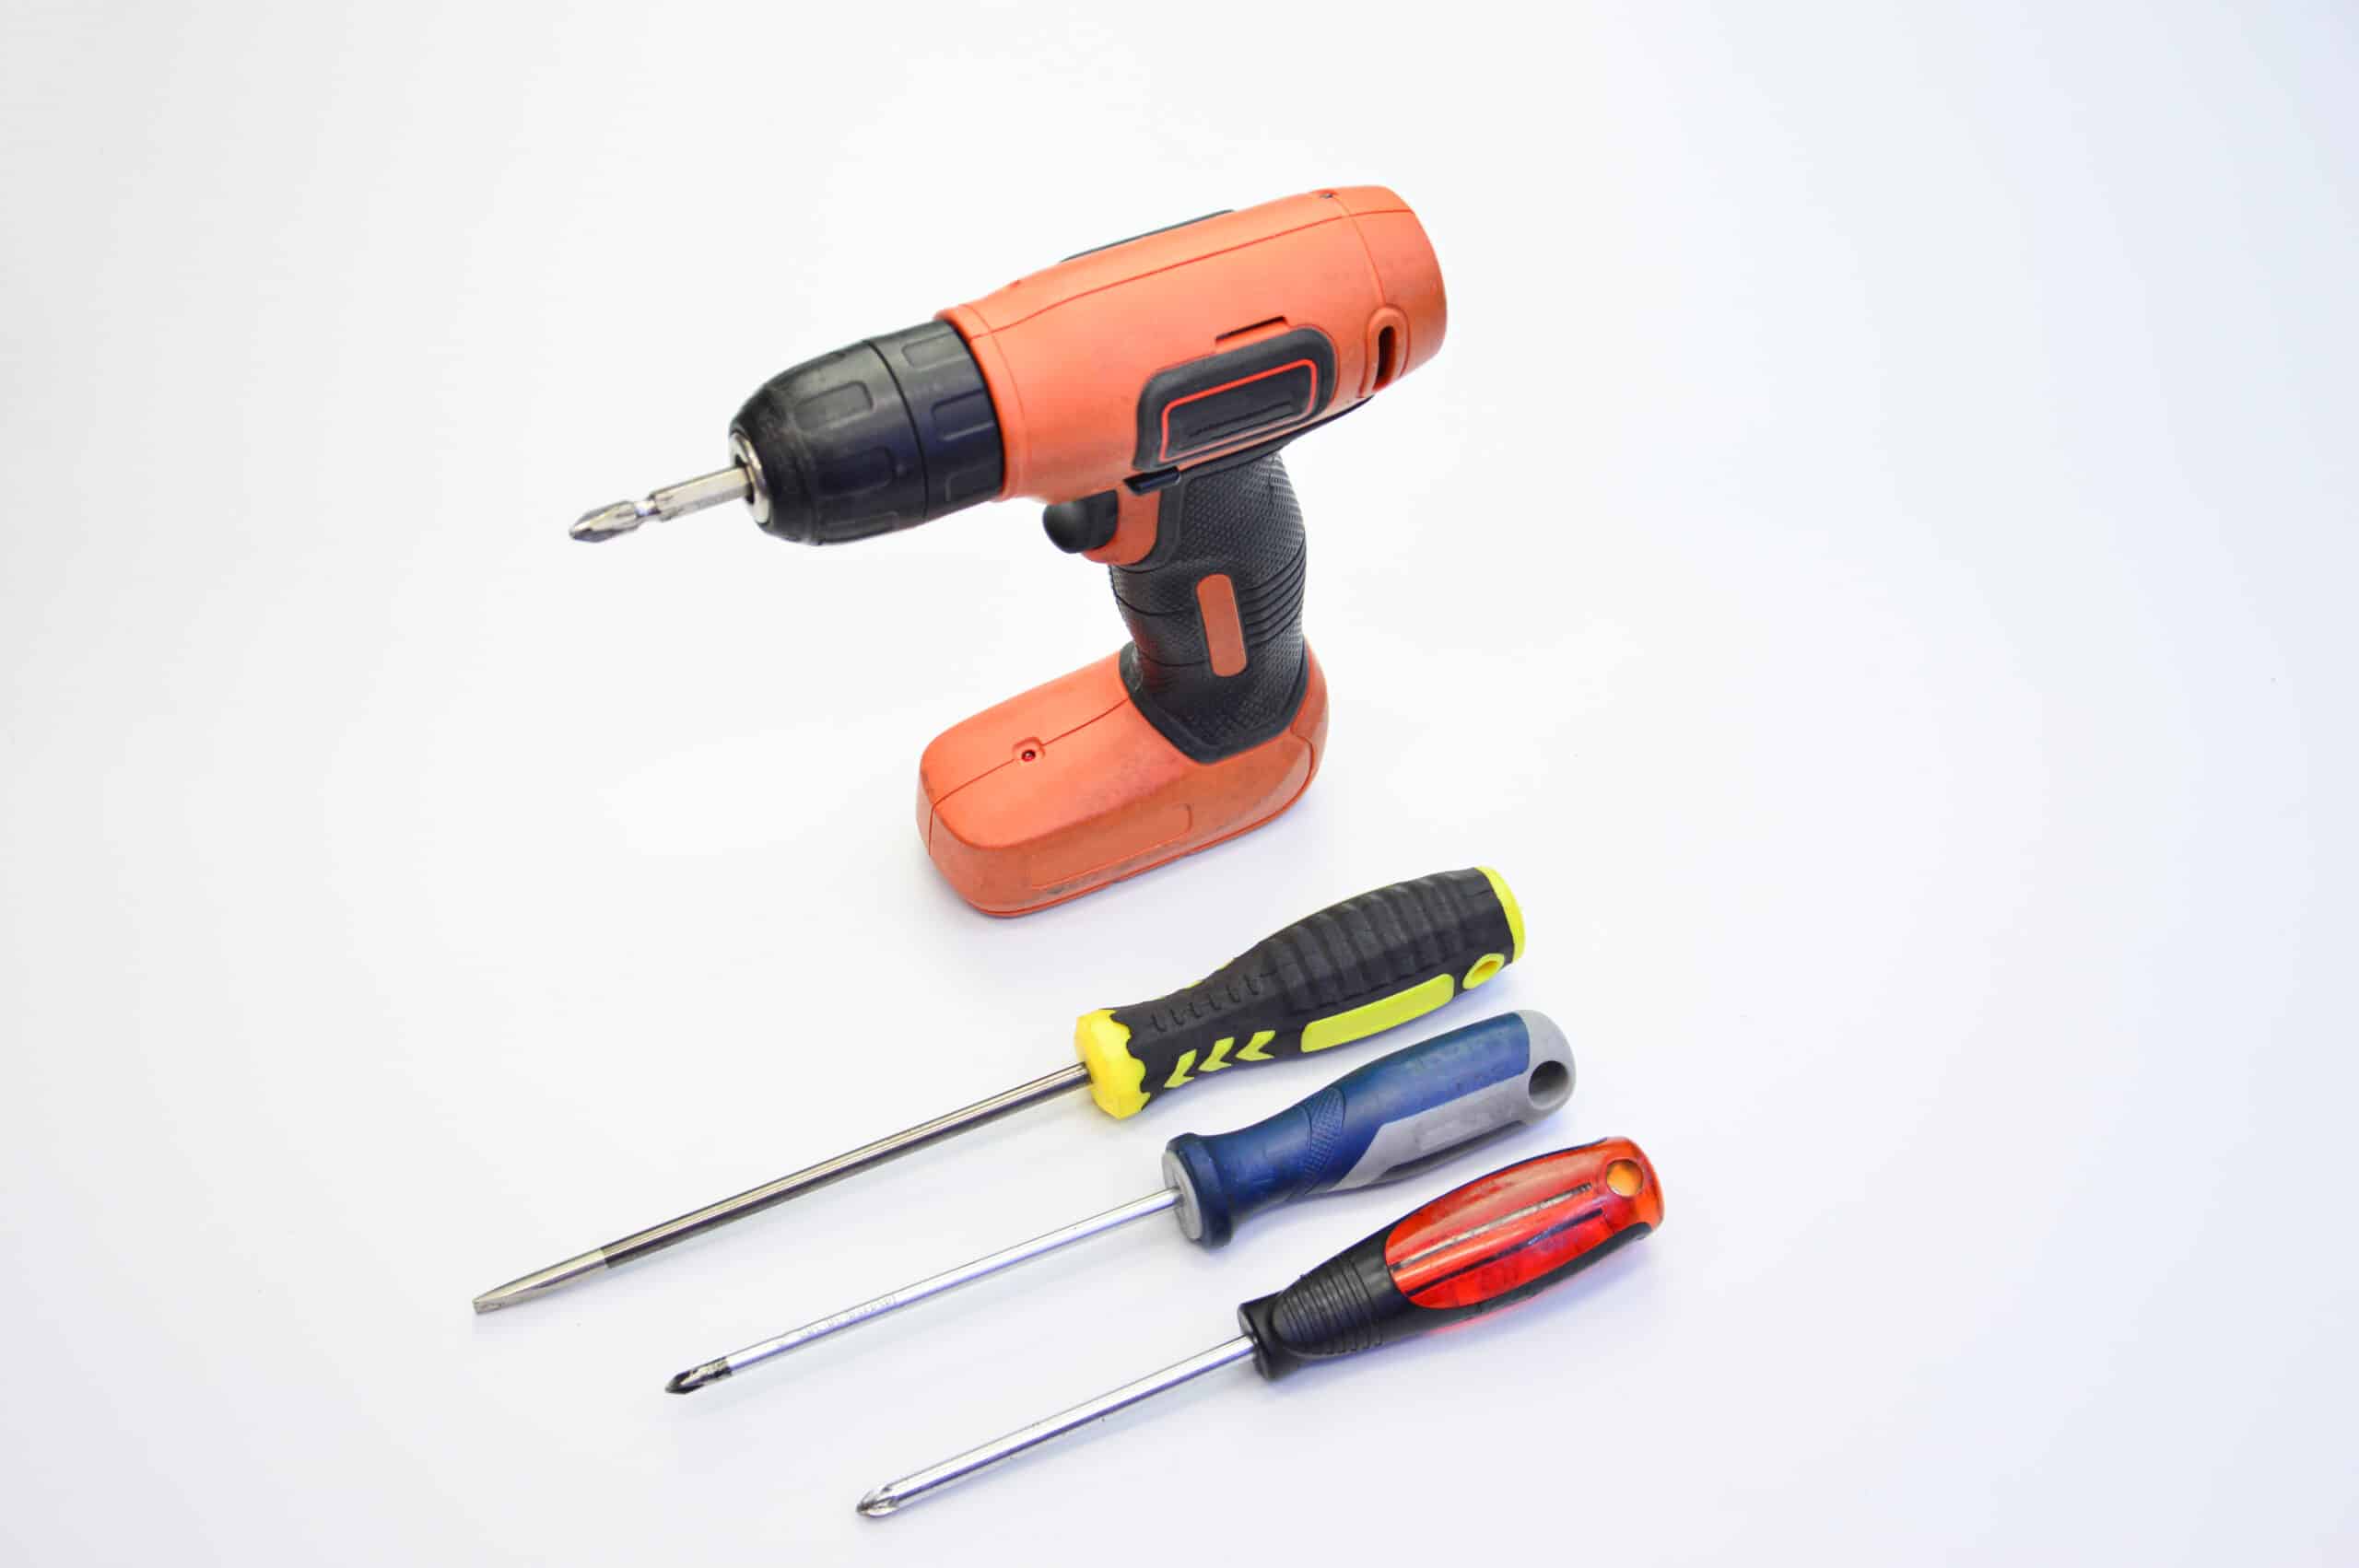 theprecisiontools.com : How does a cordless screwdriver work?